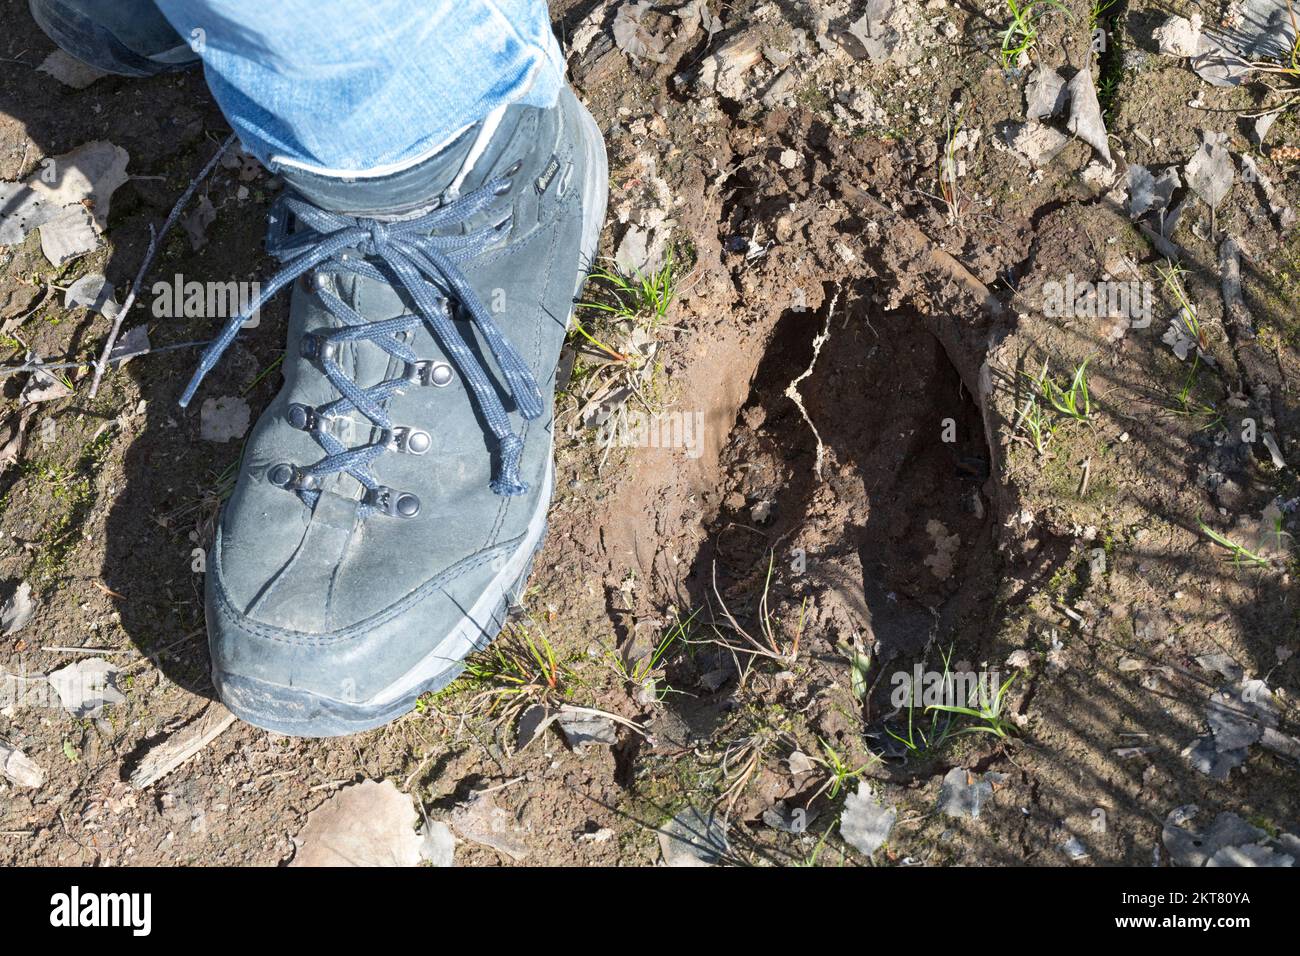 Elch, Spur, Trittsiegel, Fußspur, Fußabdruck im Schlamm, Alces alces, Elk, footprint, footmark, Elan Stock Photo